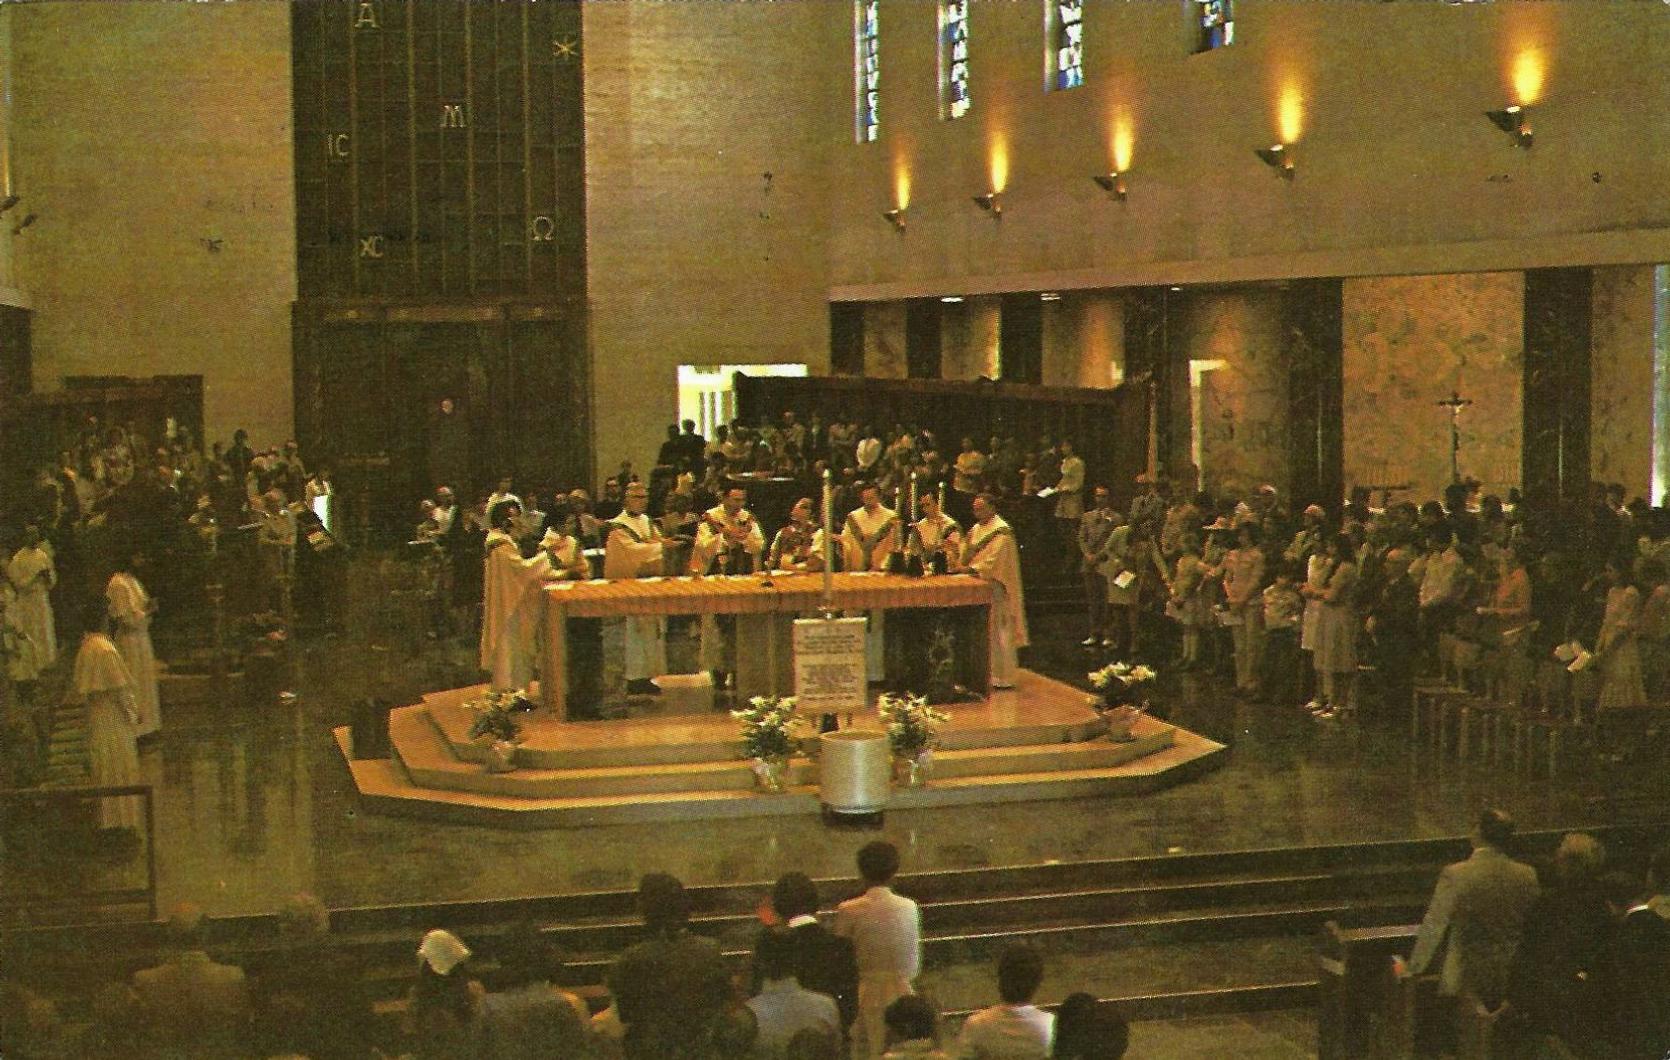 St. Norbert Abbey, Mass • 1976